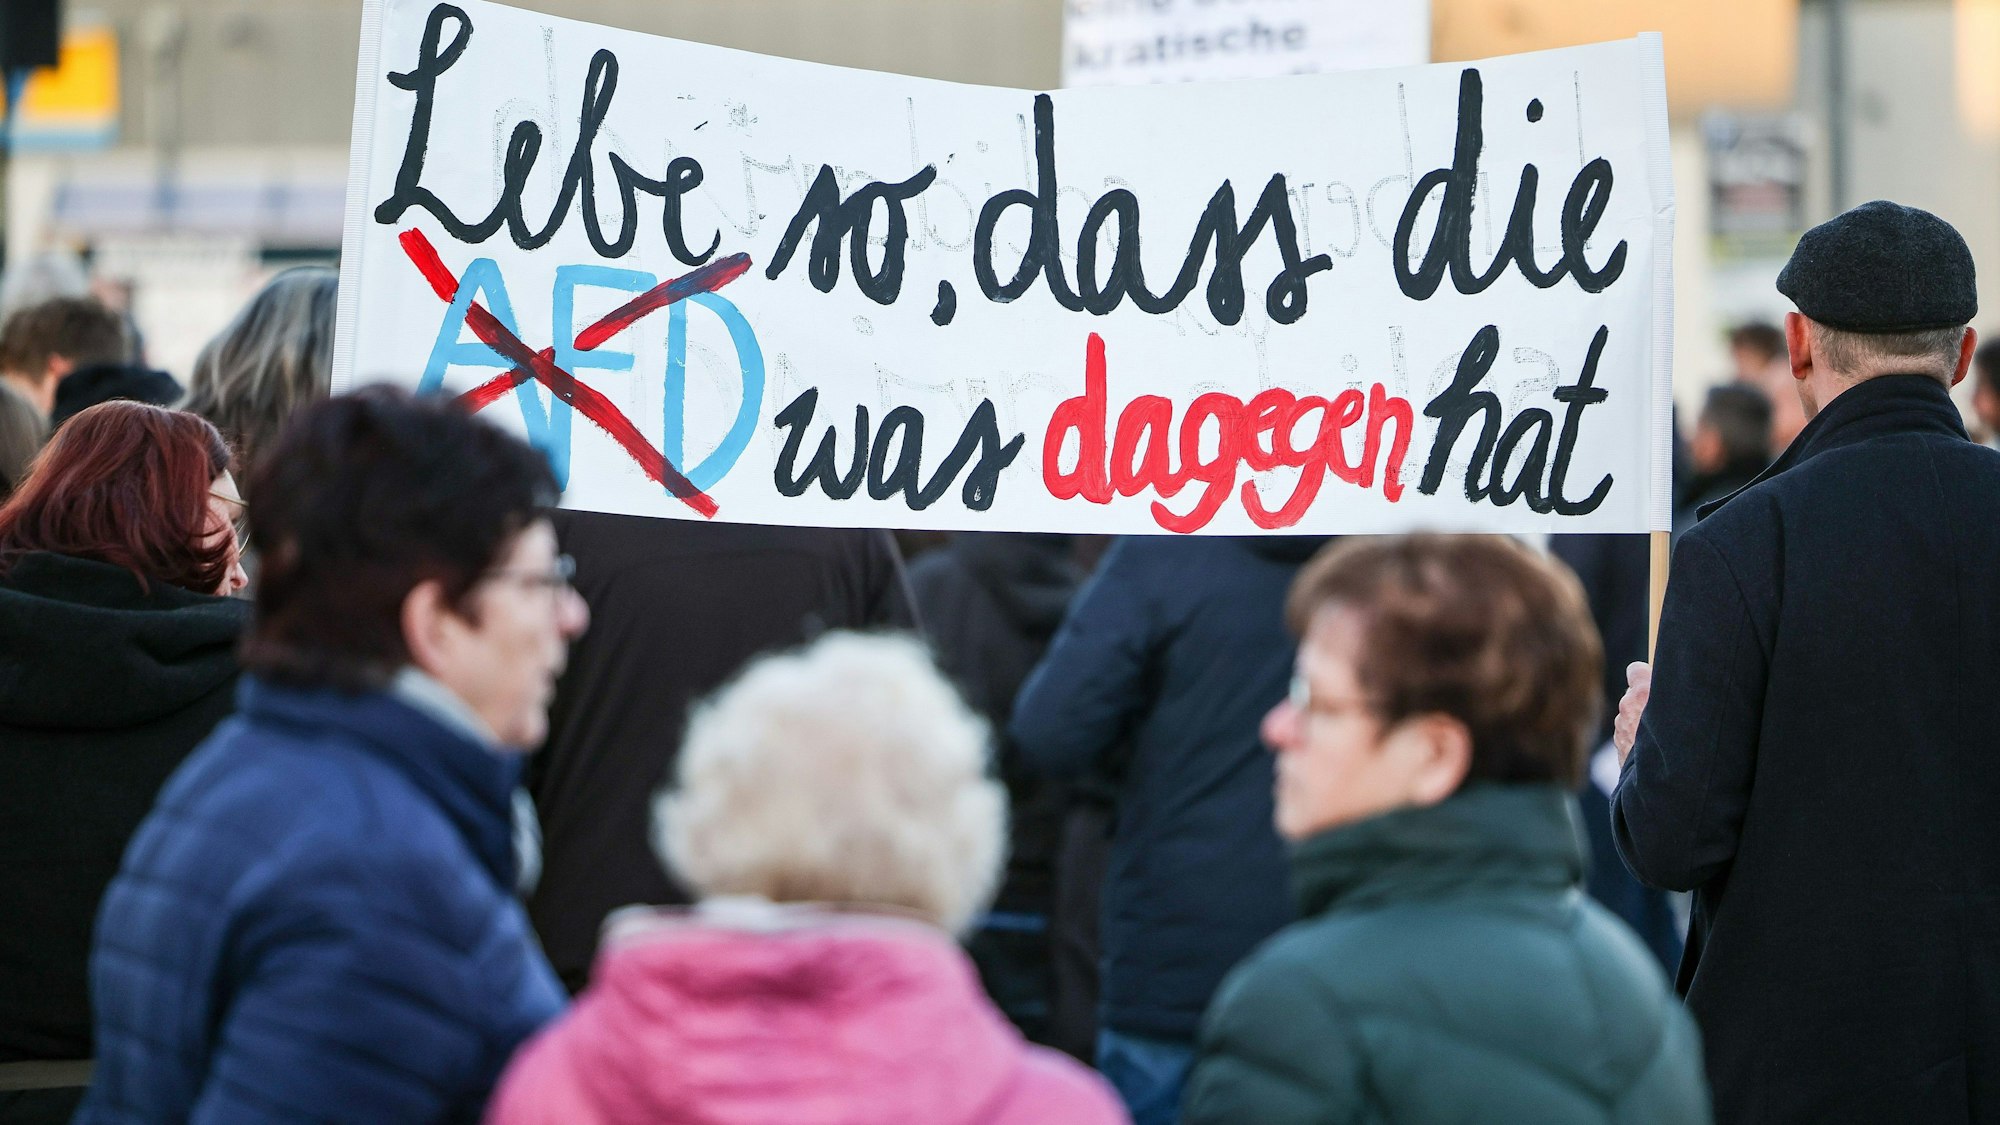 Teilnehmer einer Protestveranstaltung gegen eine AfD-Demonstration in Bad Bibra (Sachsen-Anhalt) halten ein Transparent «Lebe so, dass die AfD was dagegen hat».